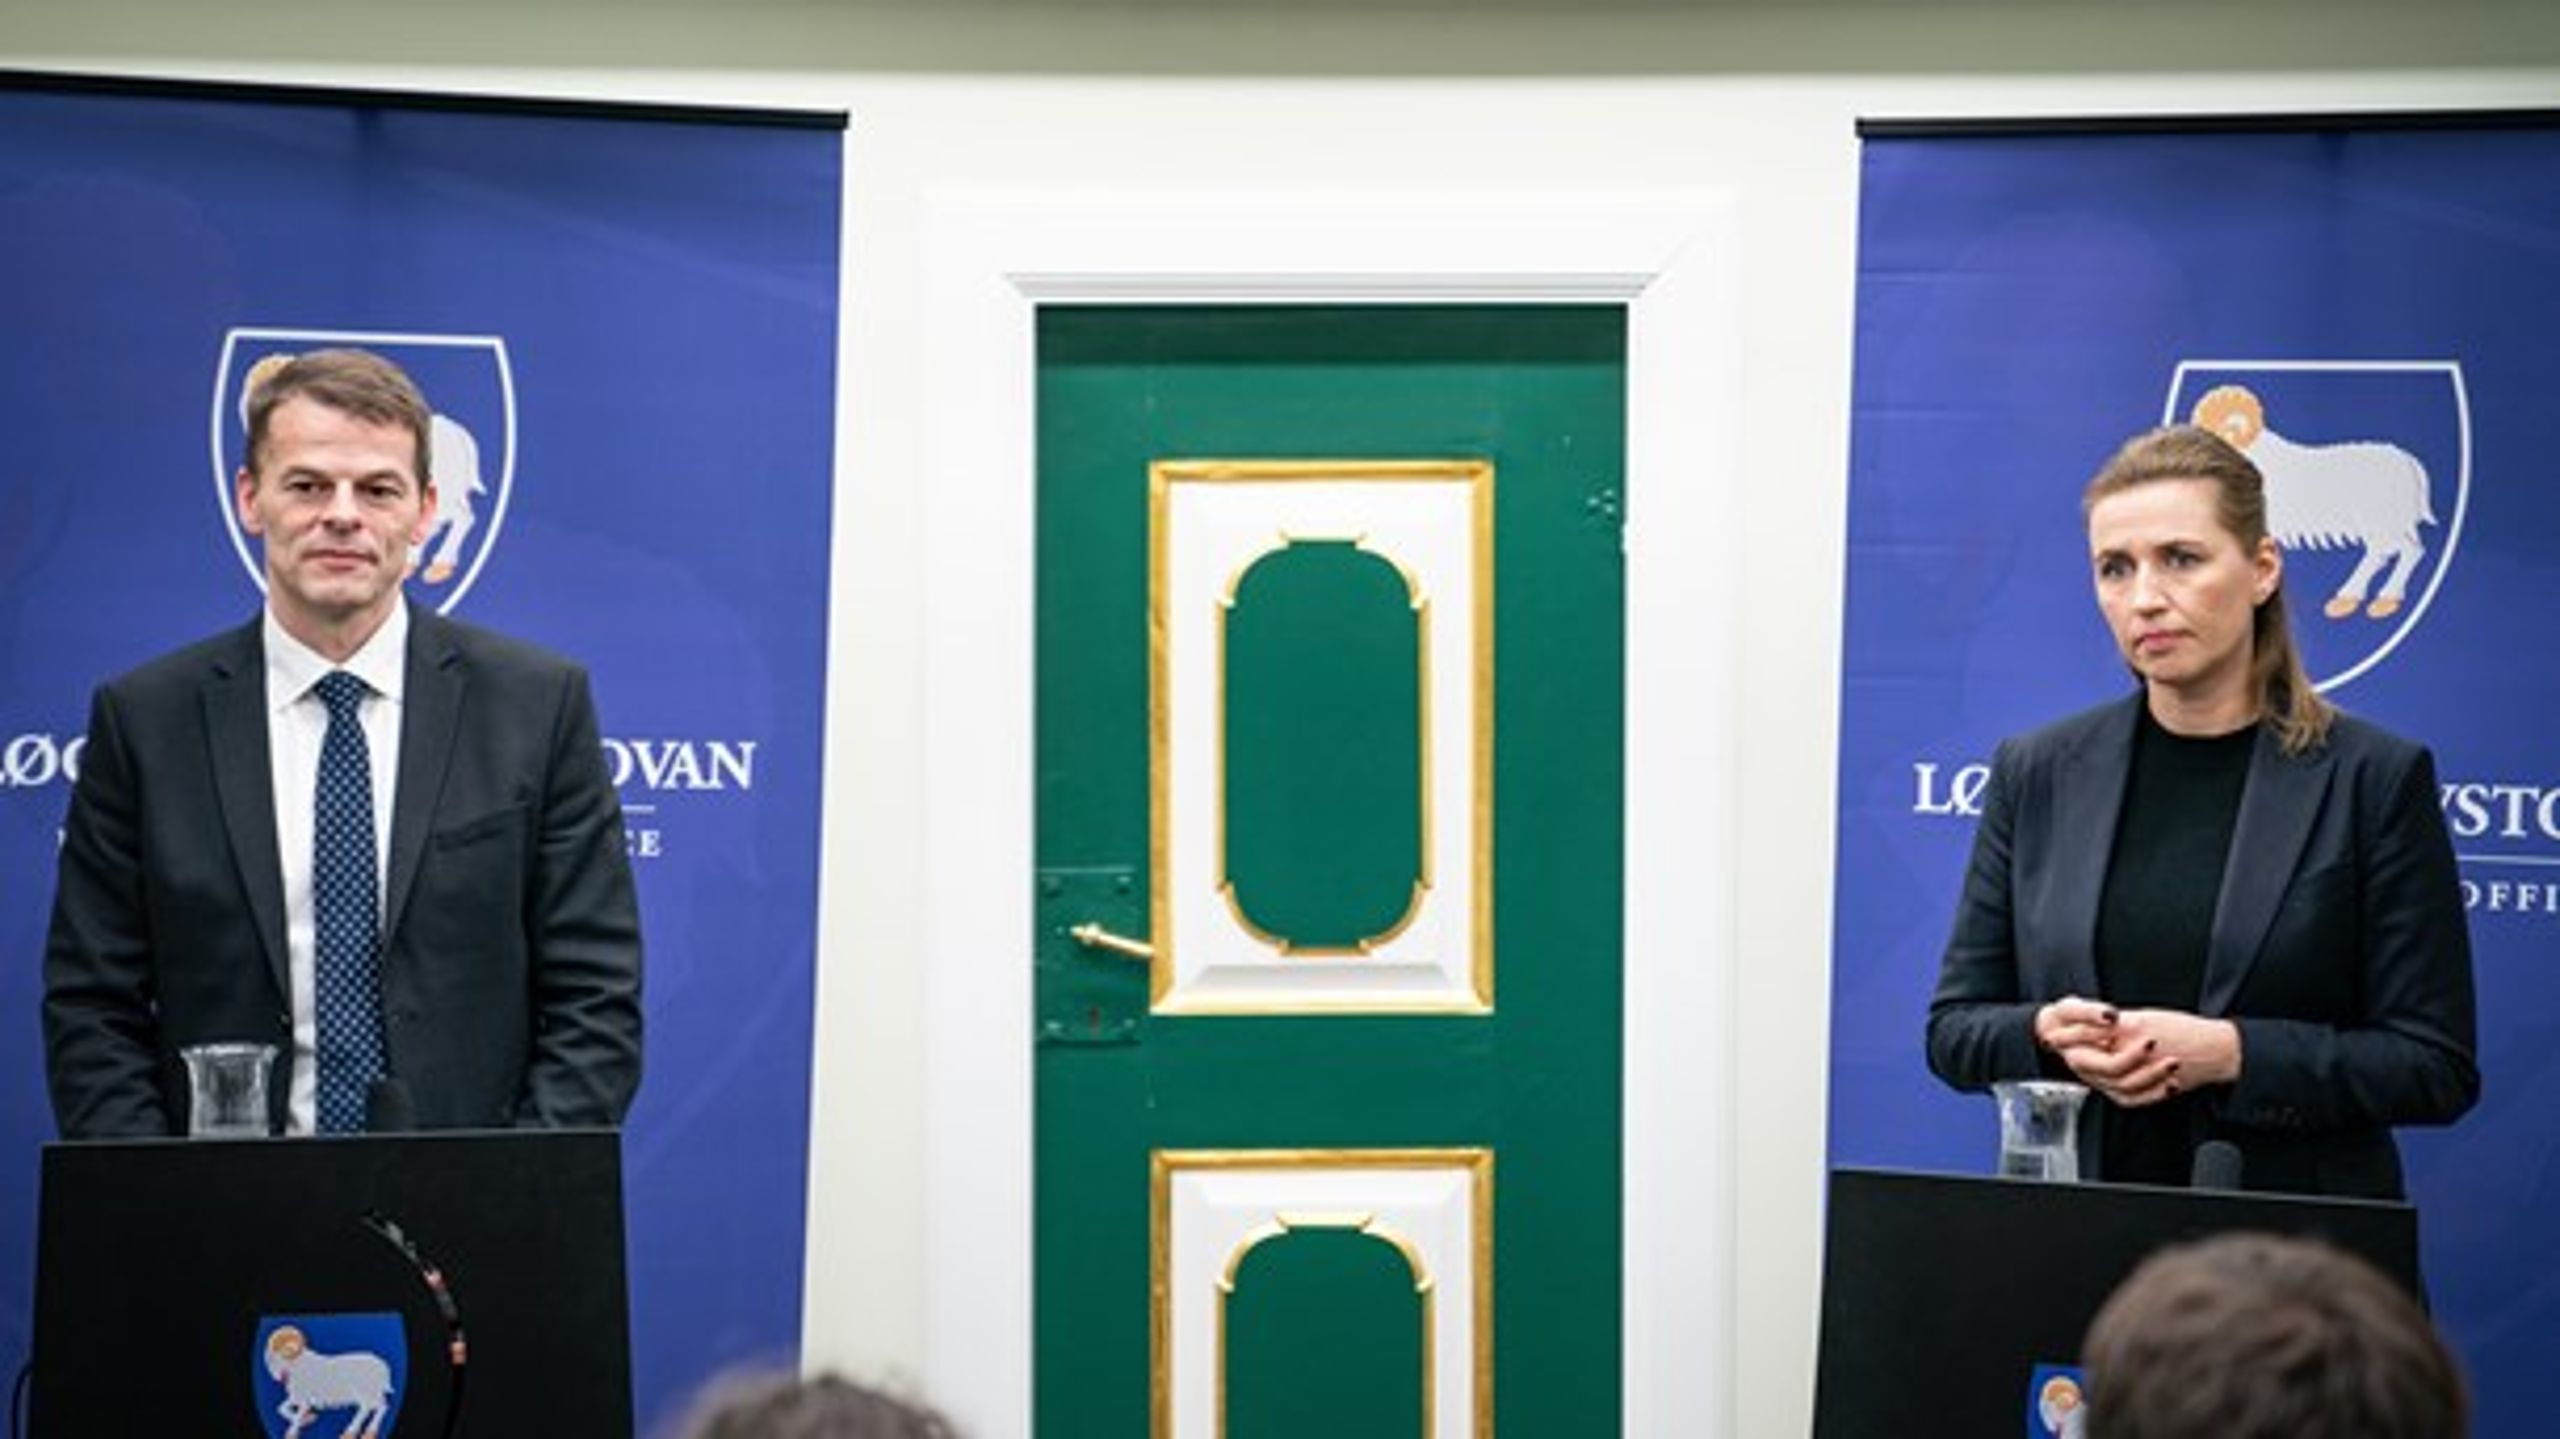 Færøerne med lagmand&nbsp;Bárður á Steig Nielsen i spidsen skal hives tættere på EU, mener Venstre, der ønsker en handelsaftale, skriver Michael Aastrup Jensen (V). Arkivfoto.